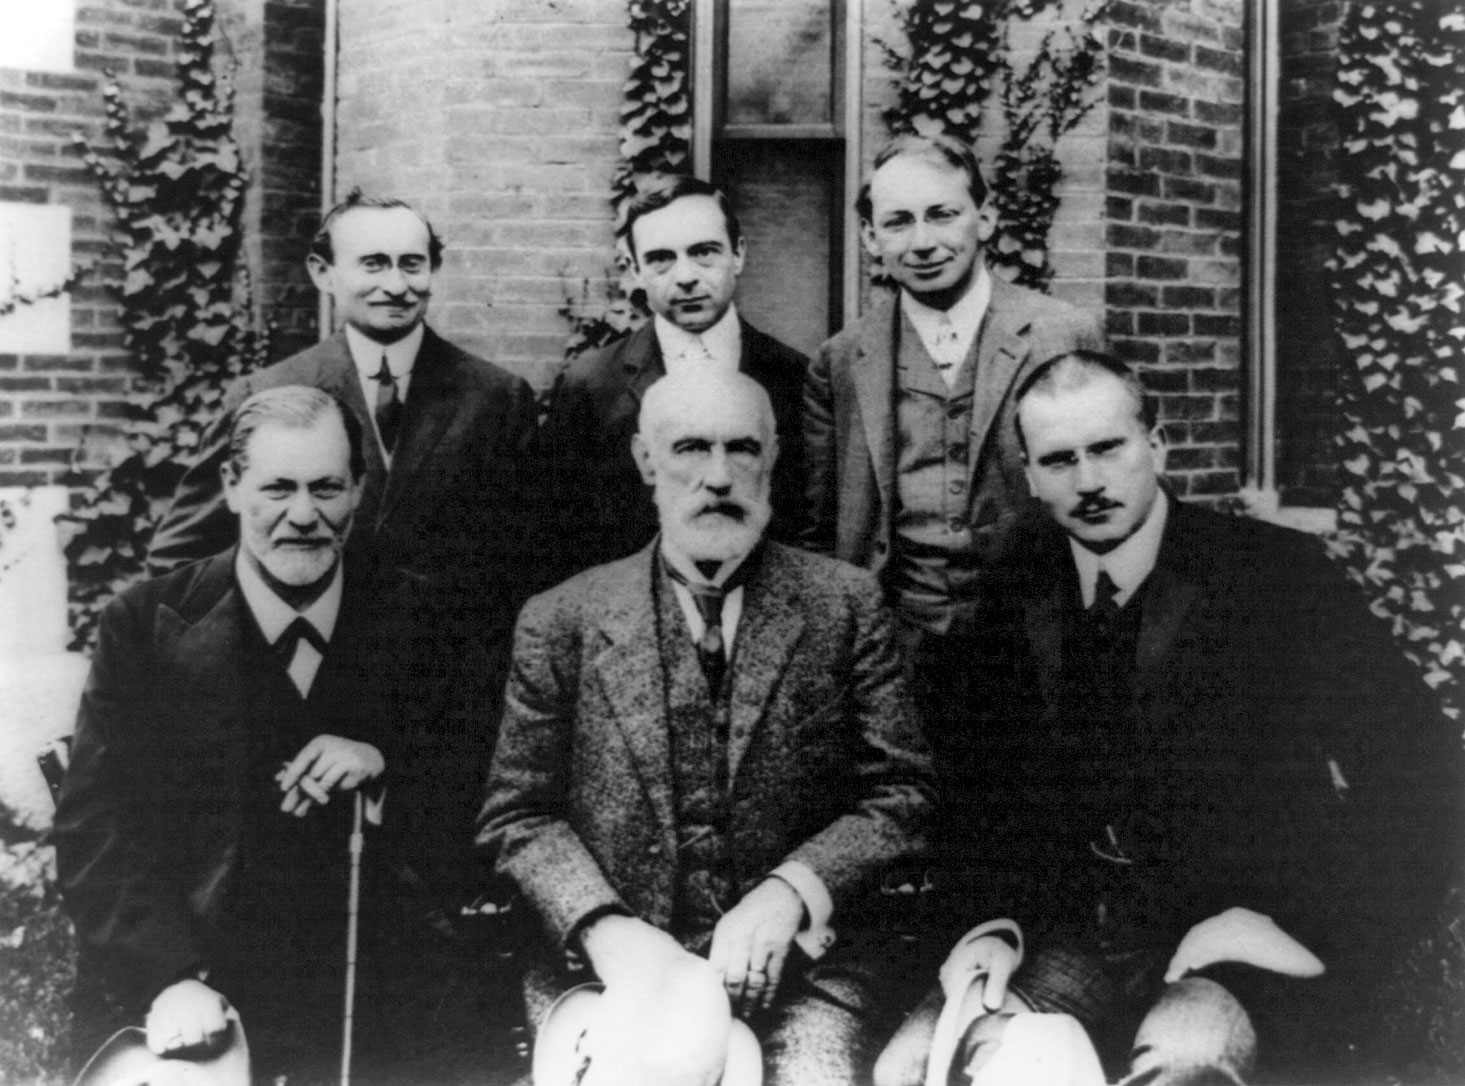 Sigmund-Freud-Carl-Jung-Austrian-psychologist-series-September-10-1909 (1)